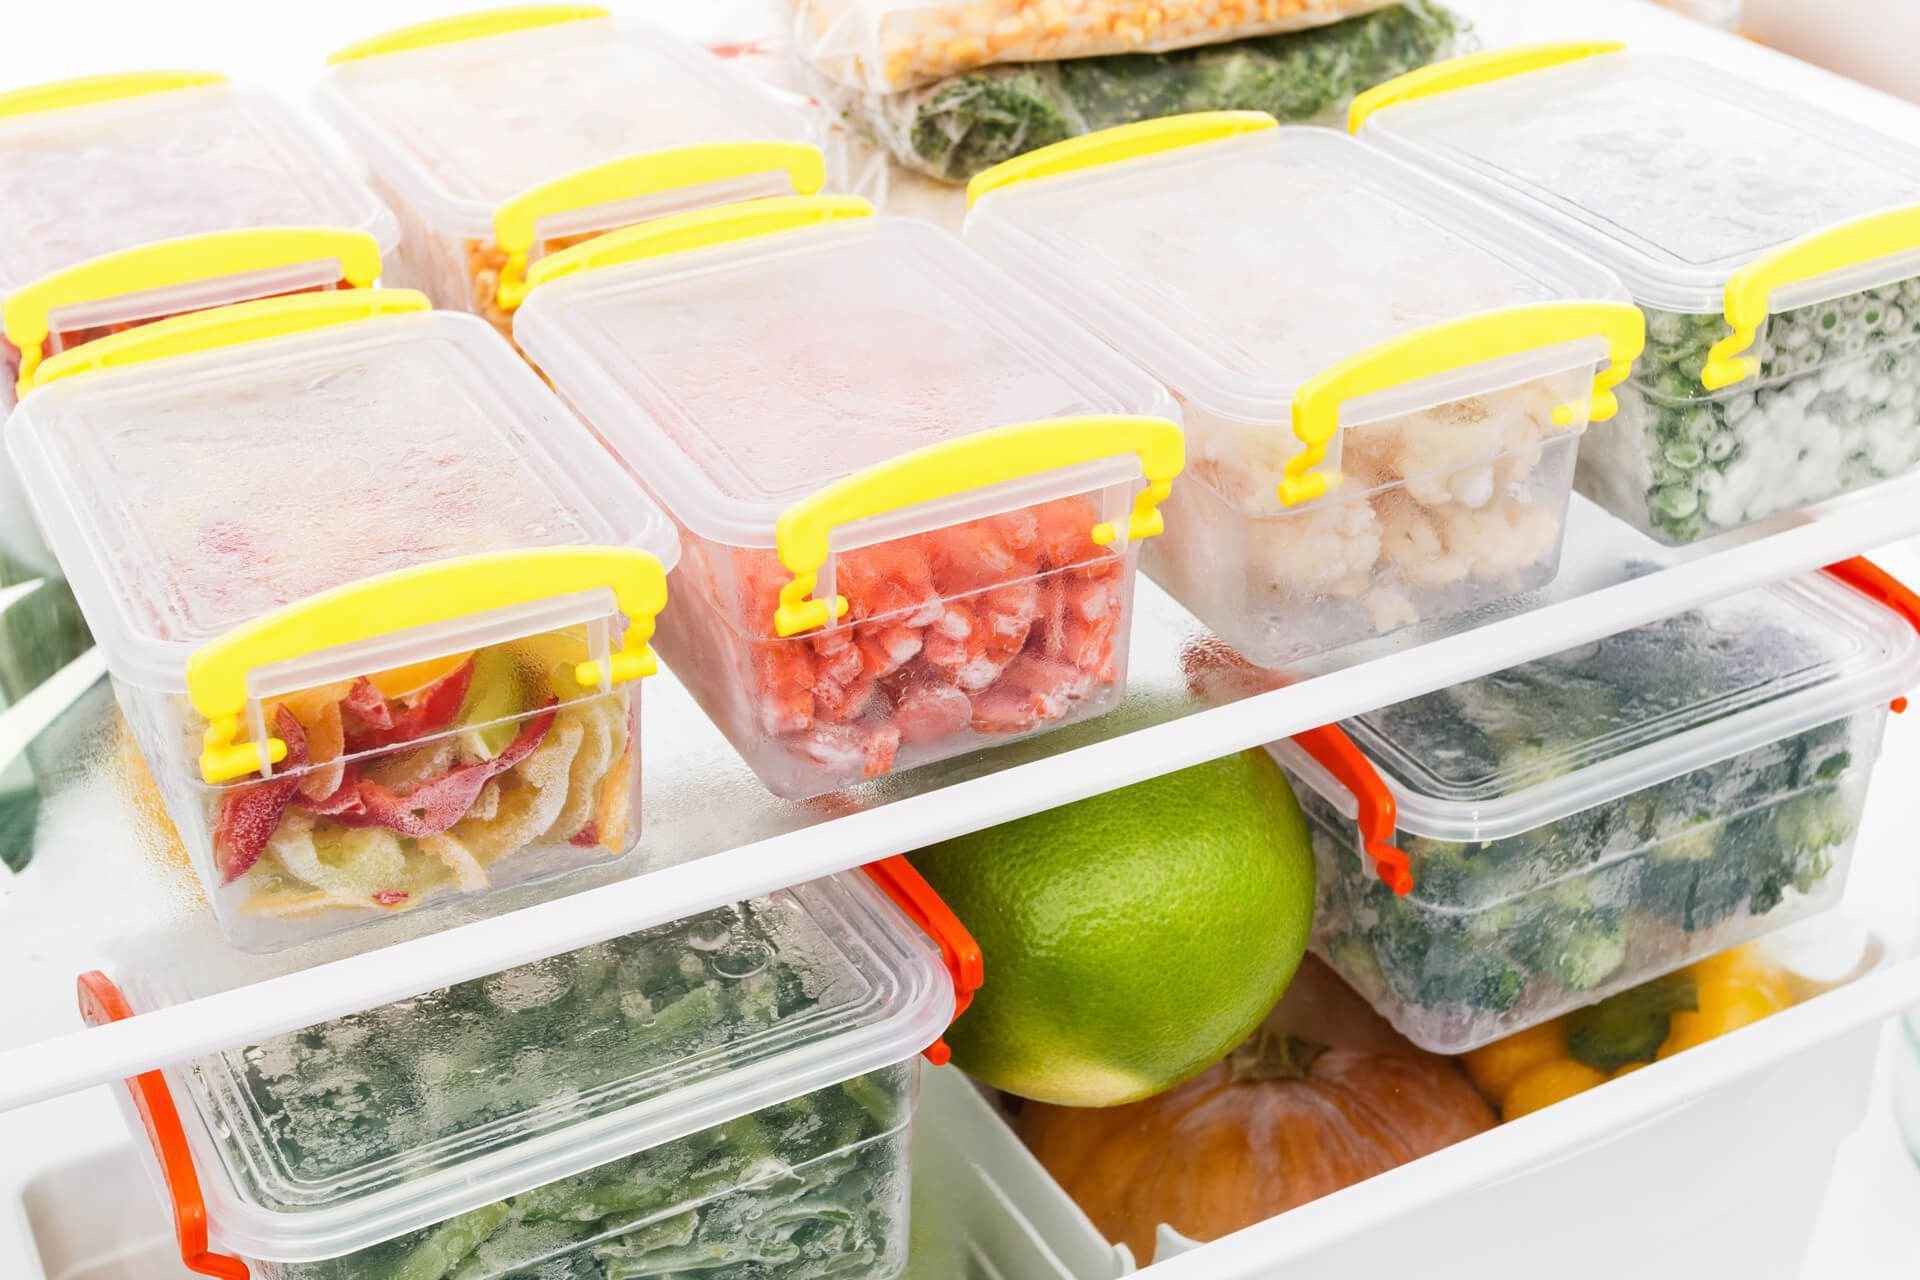 Cất giữ thực phẩm vào tủ lạnh đúng cách